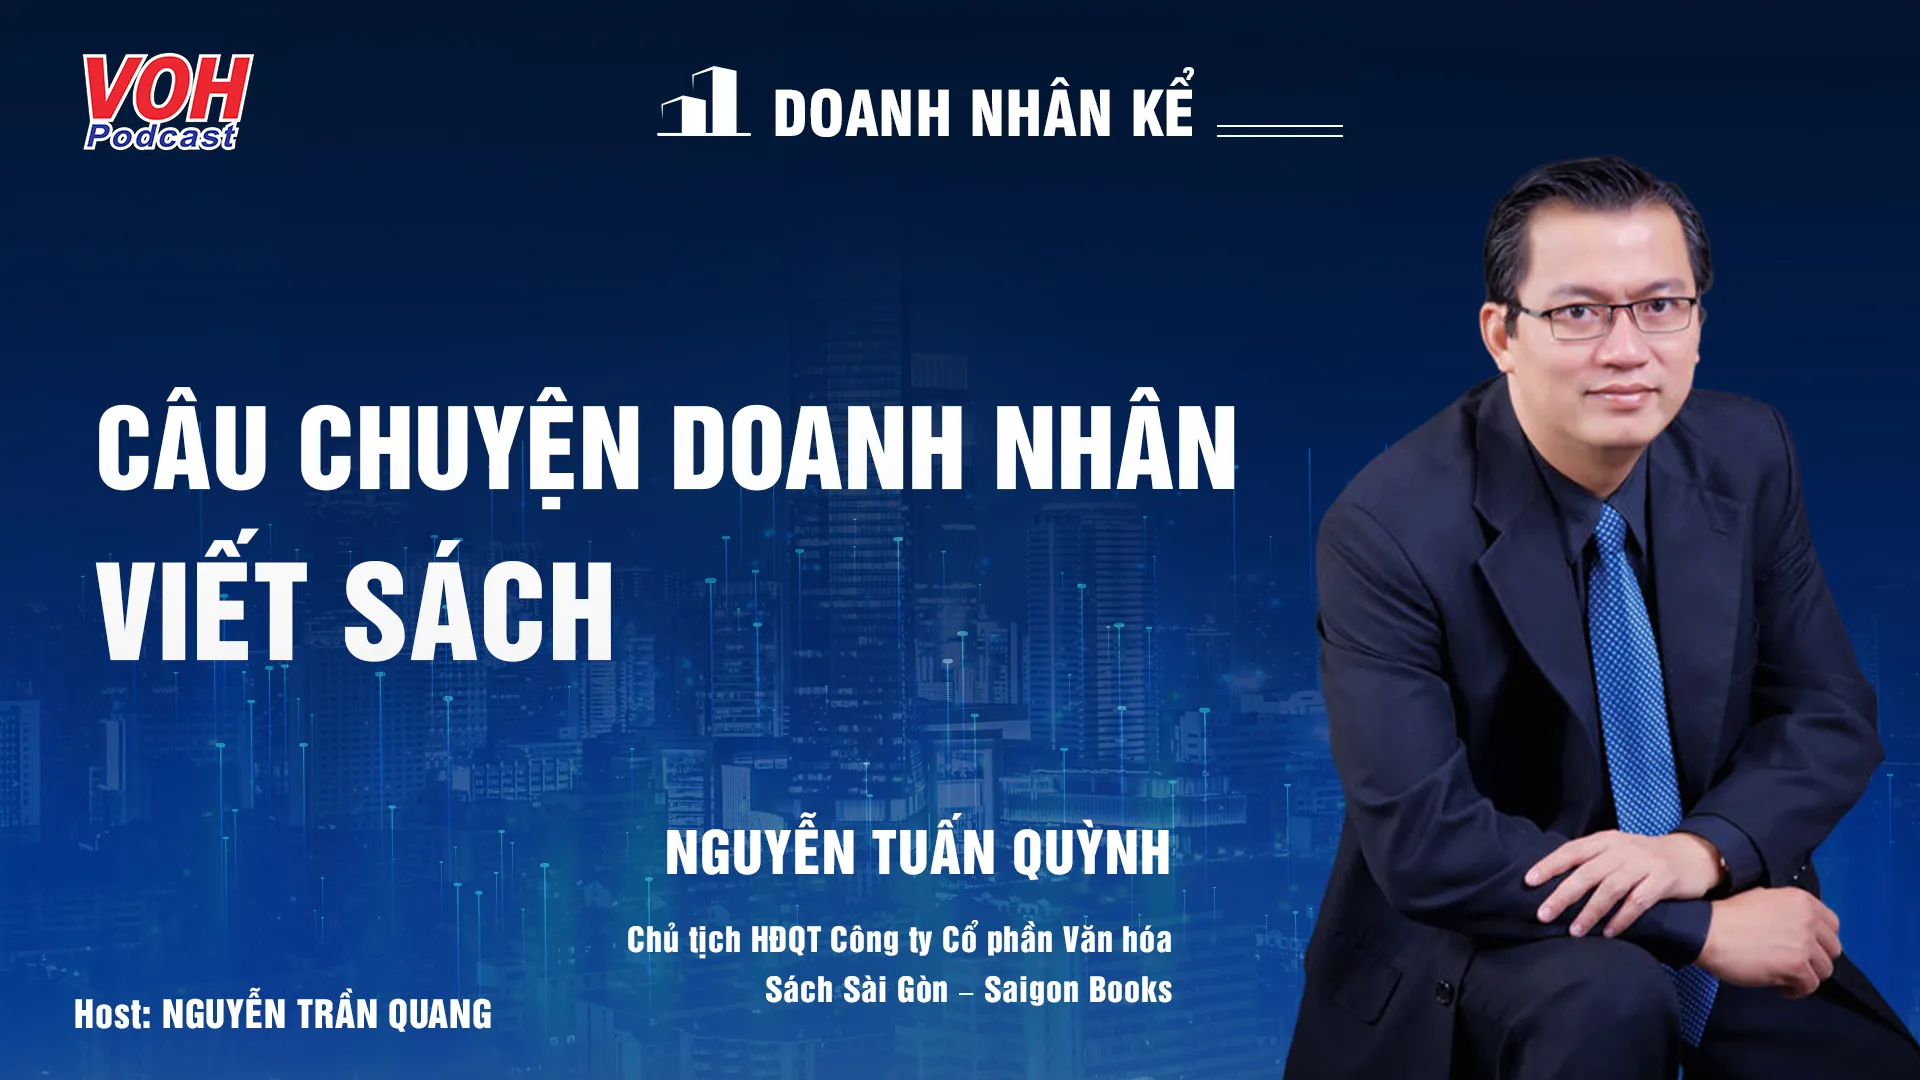 CEO Nguyễn Tuấn Quỳnh: Lạc quan về thị trường sách | DNK #14